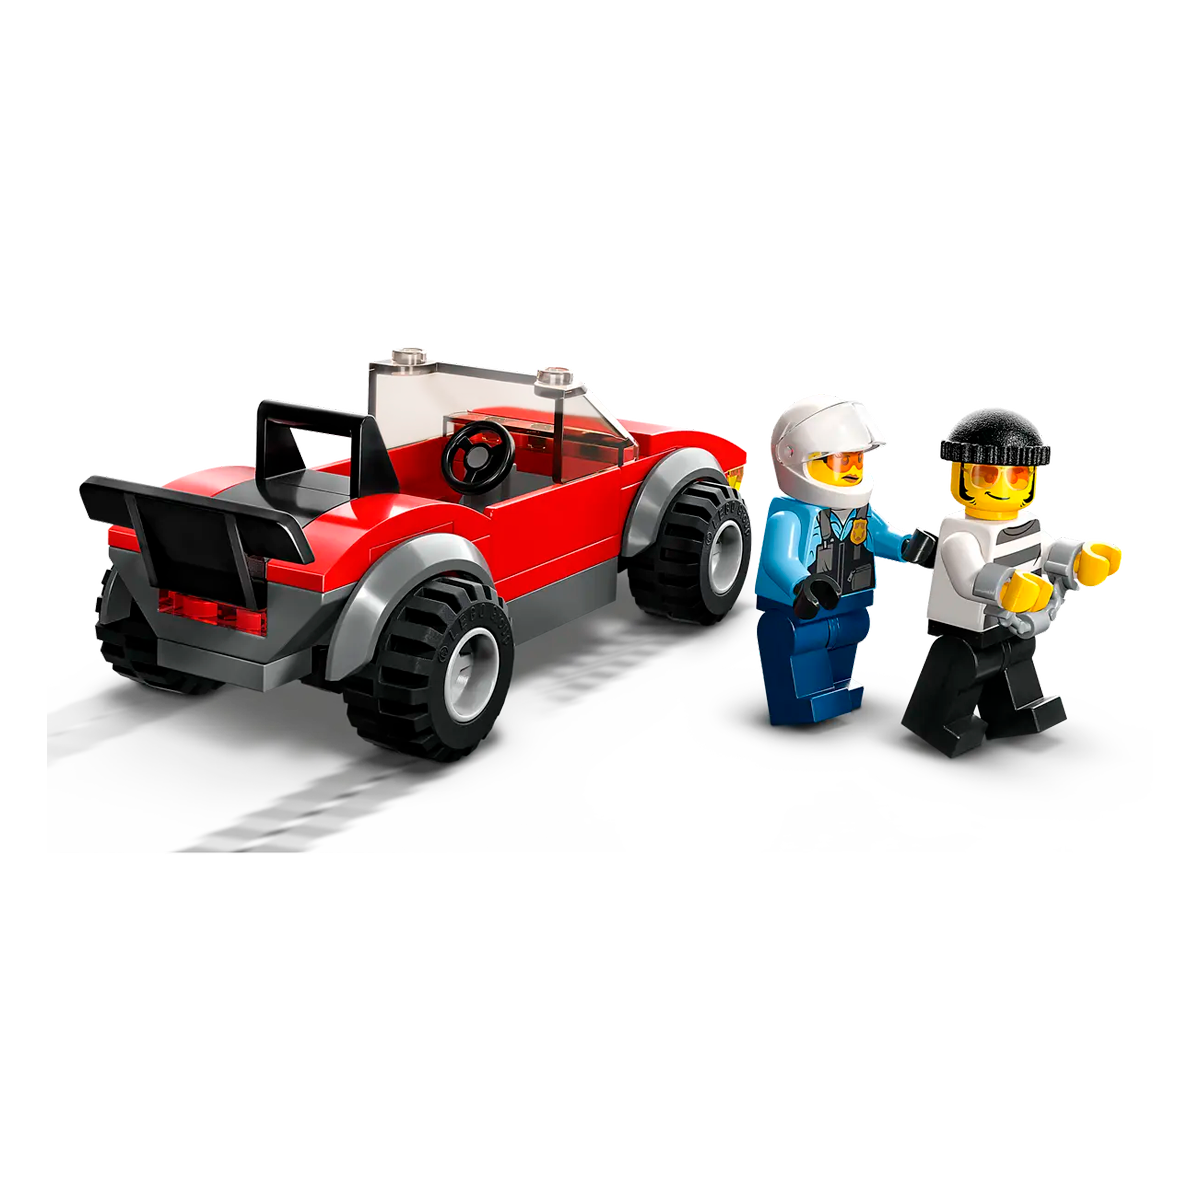 Lego City Moto de Policía y Coche a la Fuga